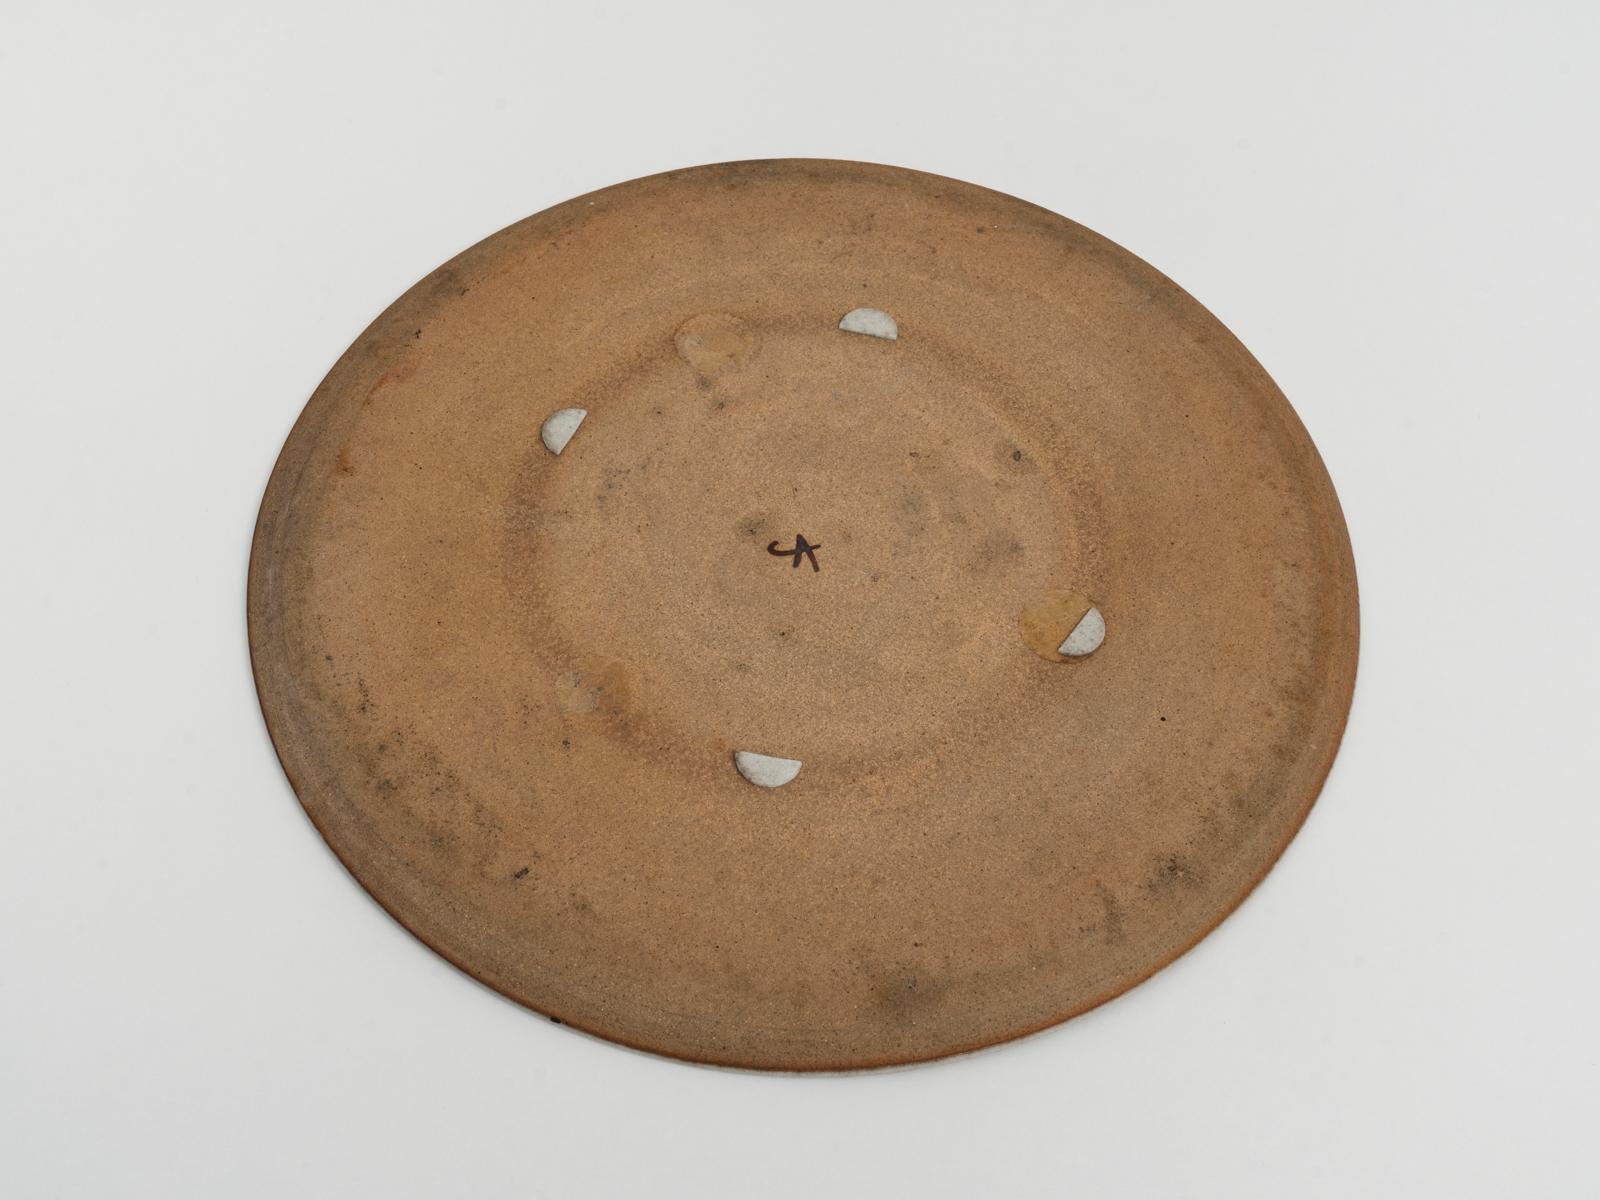 Italian Nanni Valentini Signed Large Stoneware Plate for Ceramica Arcore, 1960s